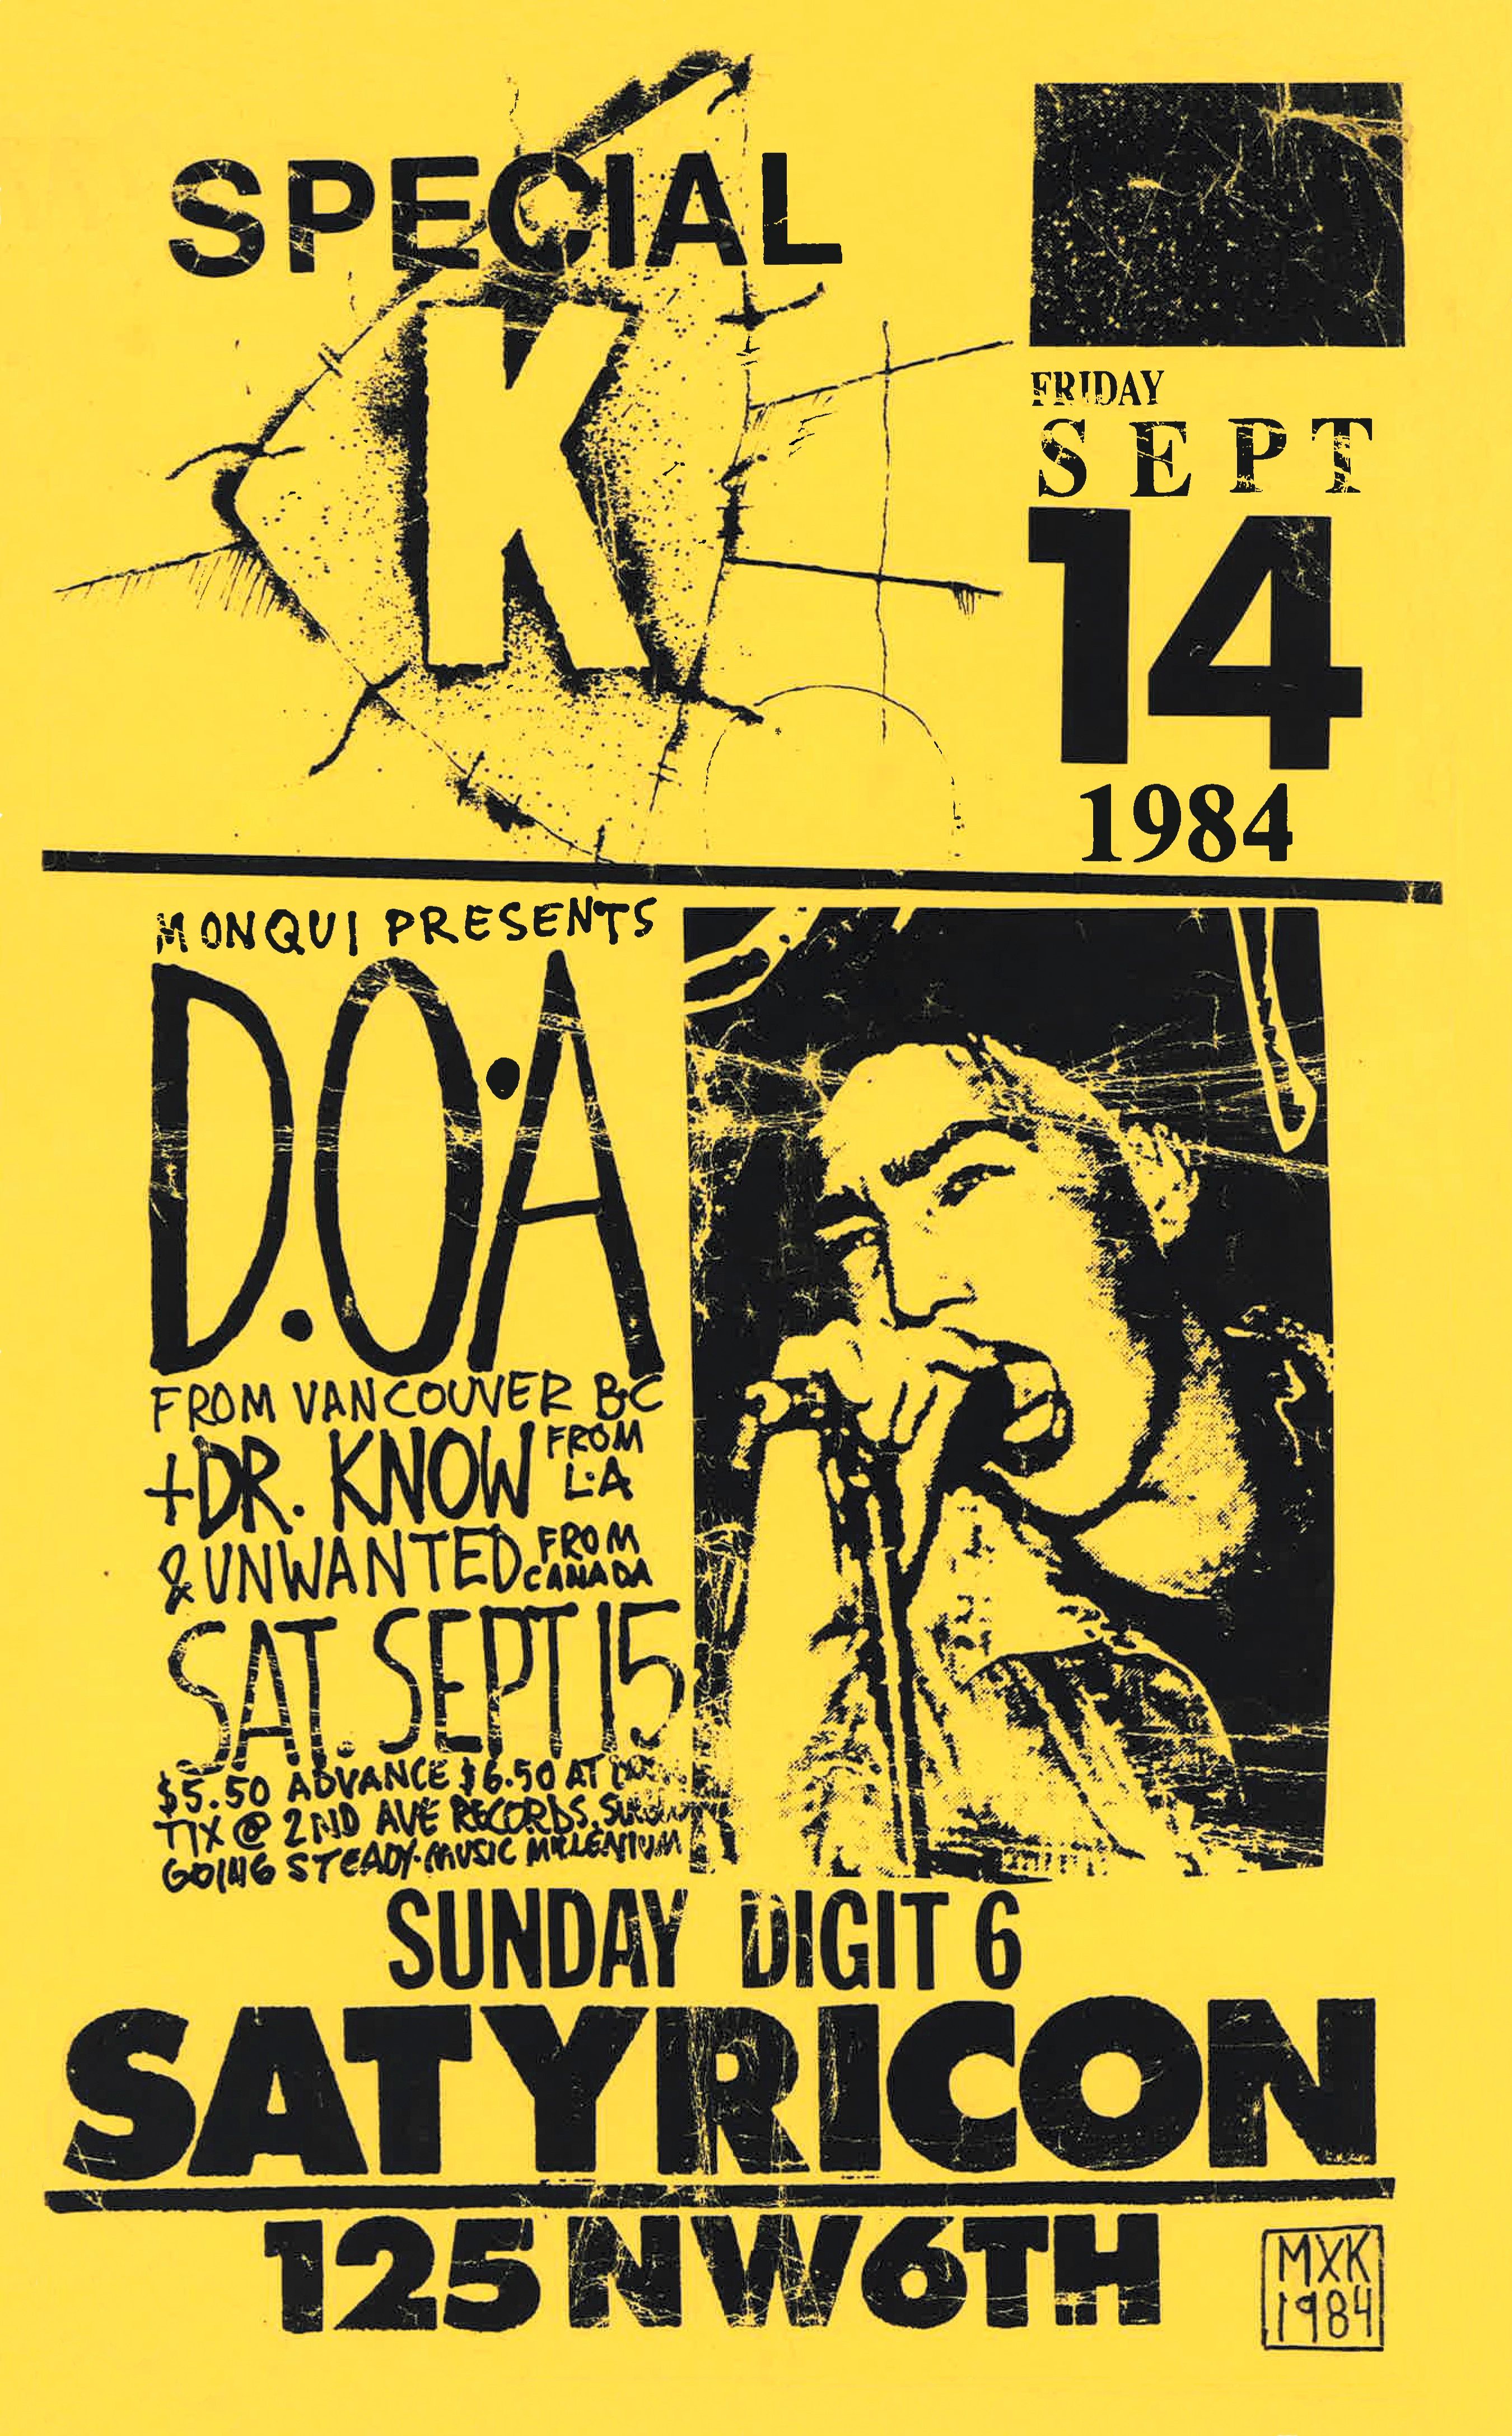 MXP-166.1 Special K & DOA Satyricon 1984 Concert Poster